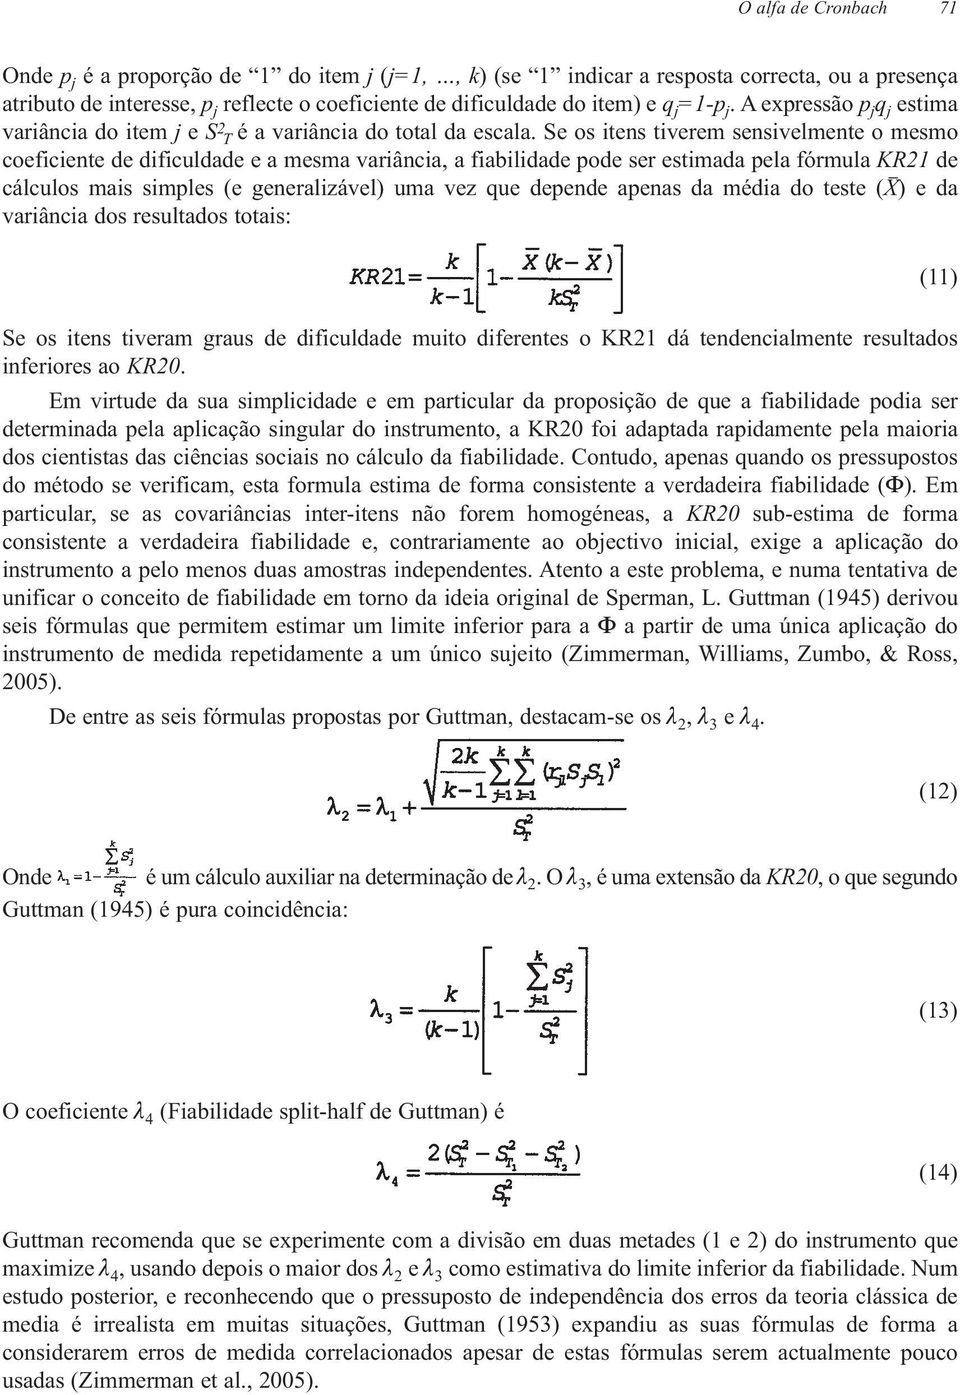 Se os itens tiverem sensivelmente o mesmo coeficiente de dificuldade e a mesma variância, a fiabilidade pode ser estimada pela fórmula KR21 de cálculos mais simples (e generalizável) uma vez que